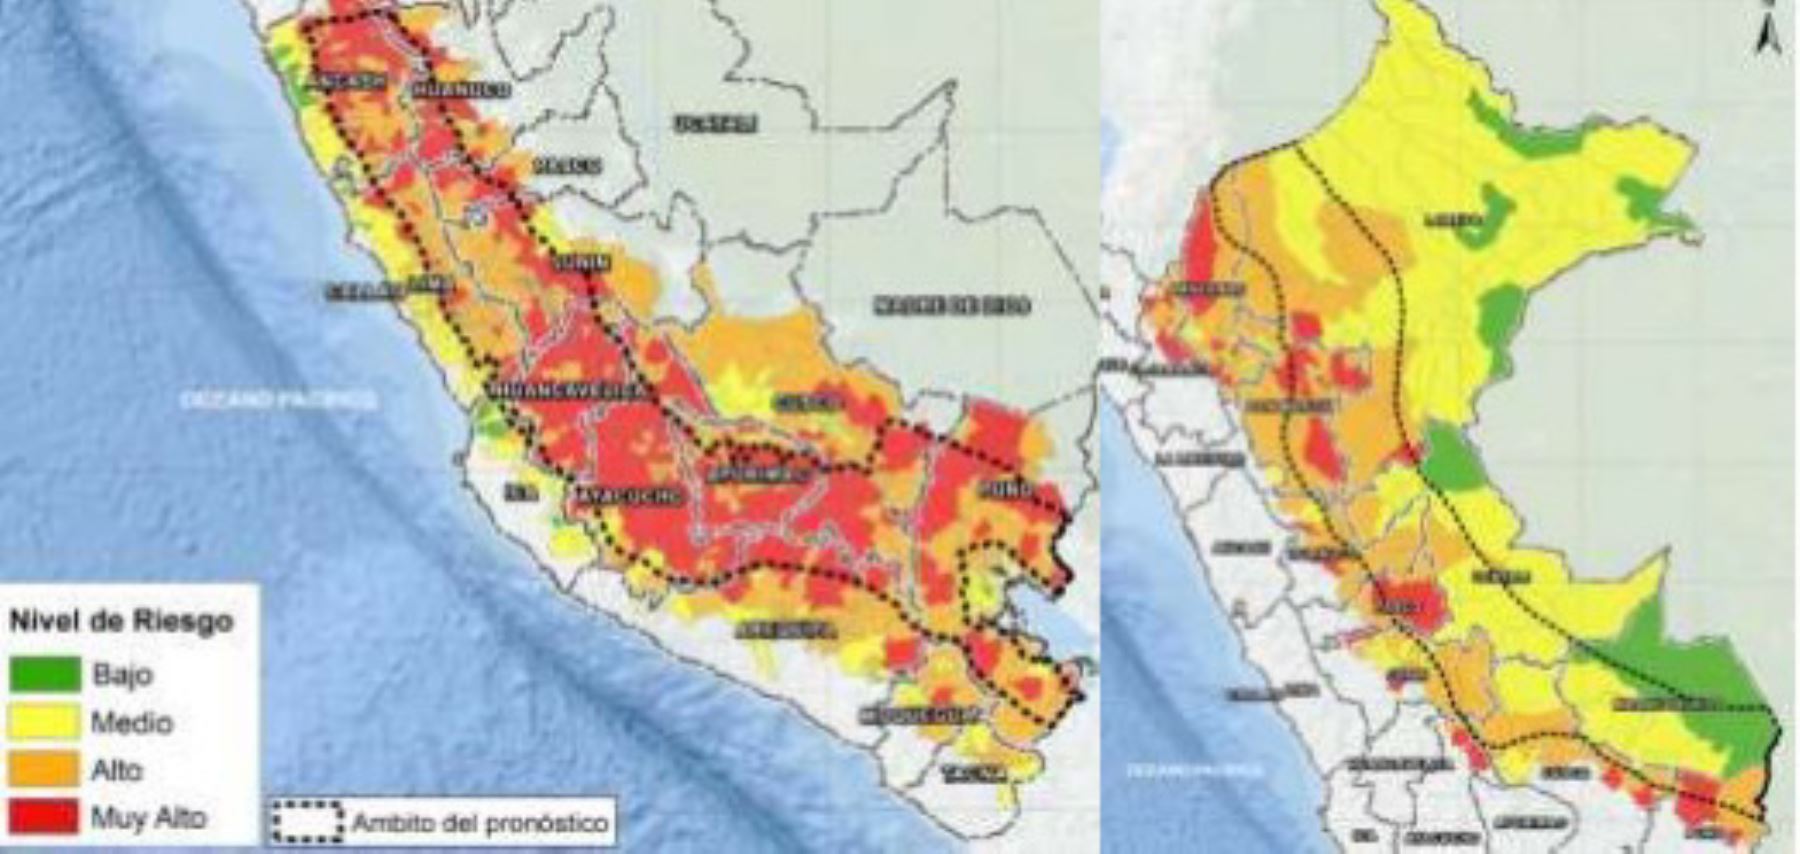 El Cenepred informó que 524 distritos de la Sierra y la Selva presentan riesgo muy alto de afectación por deslizamientos, huaicos u otro tipo de movimientos de masa.